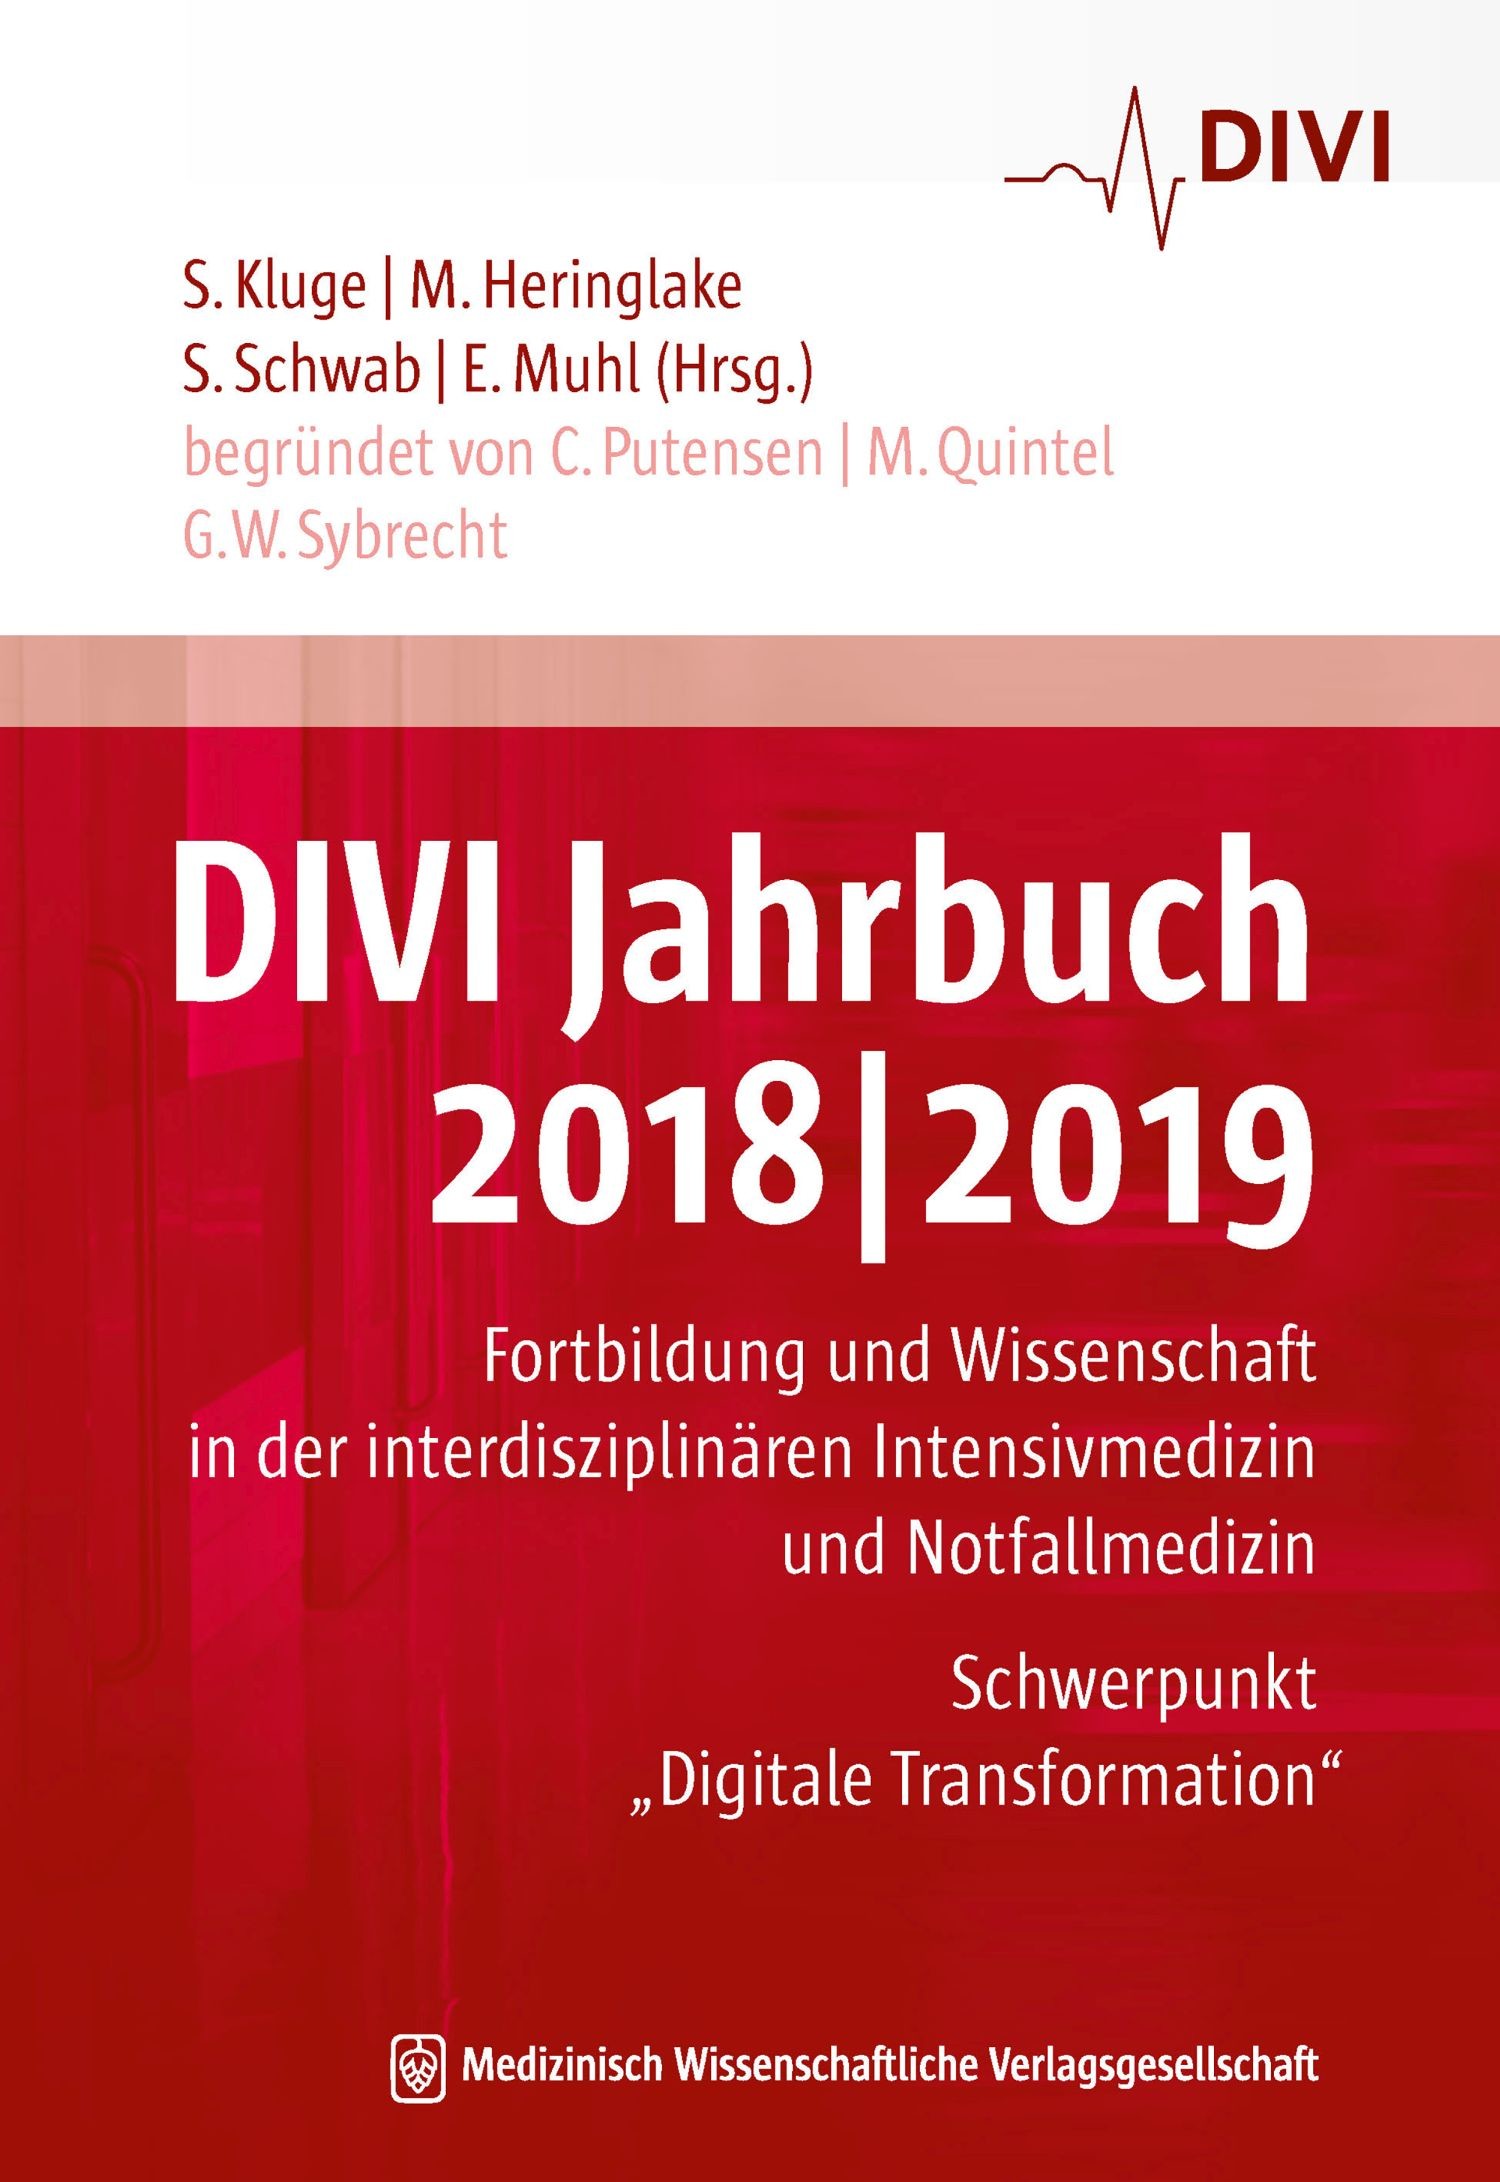 DIVI Jahrbuch 2018/2019